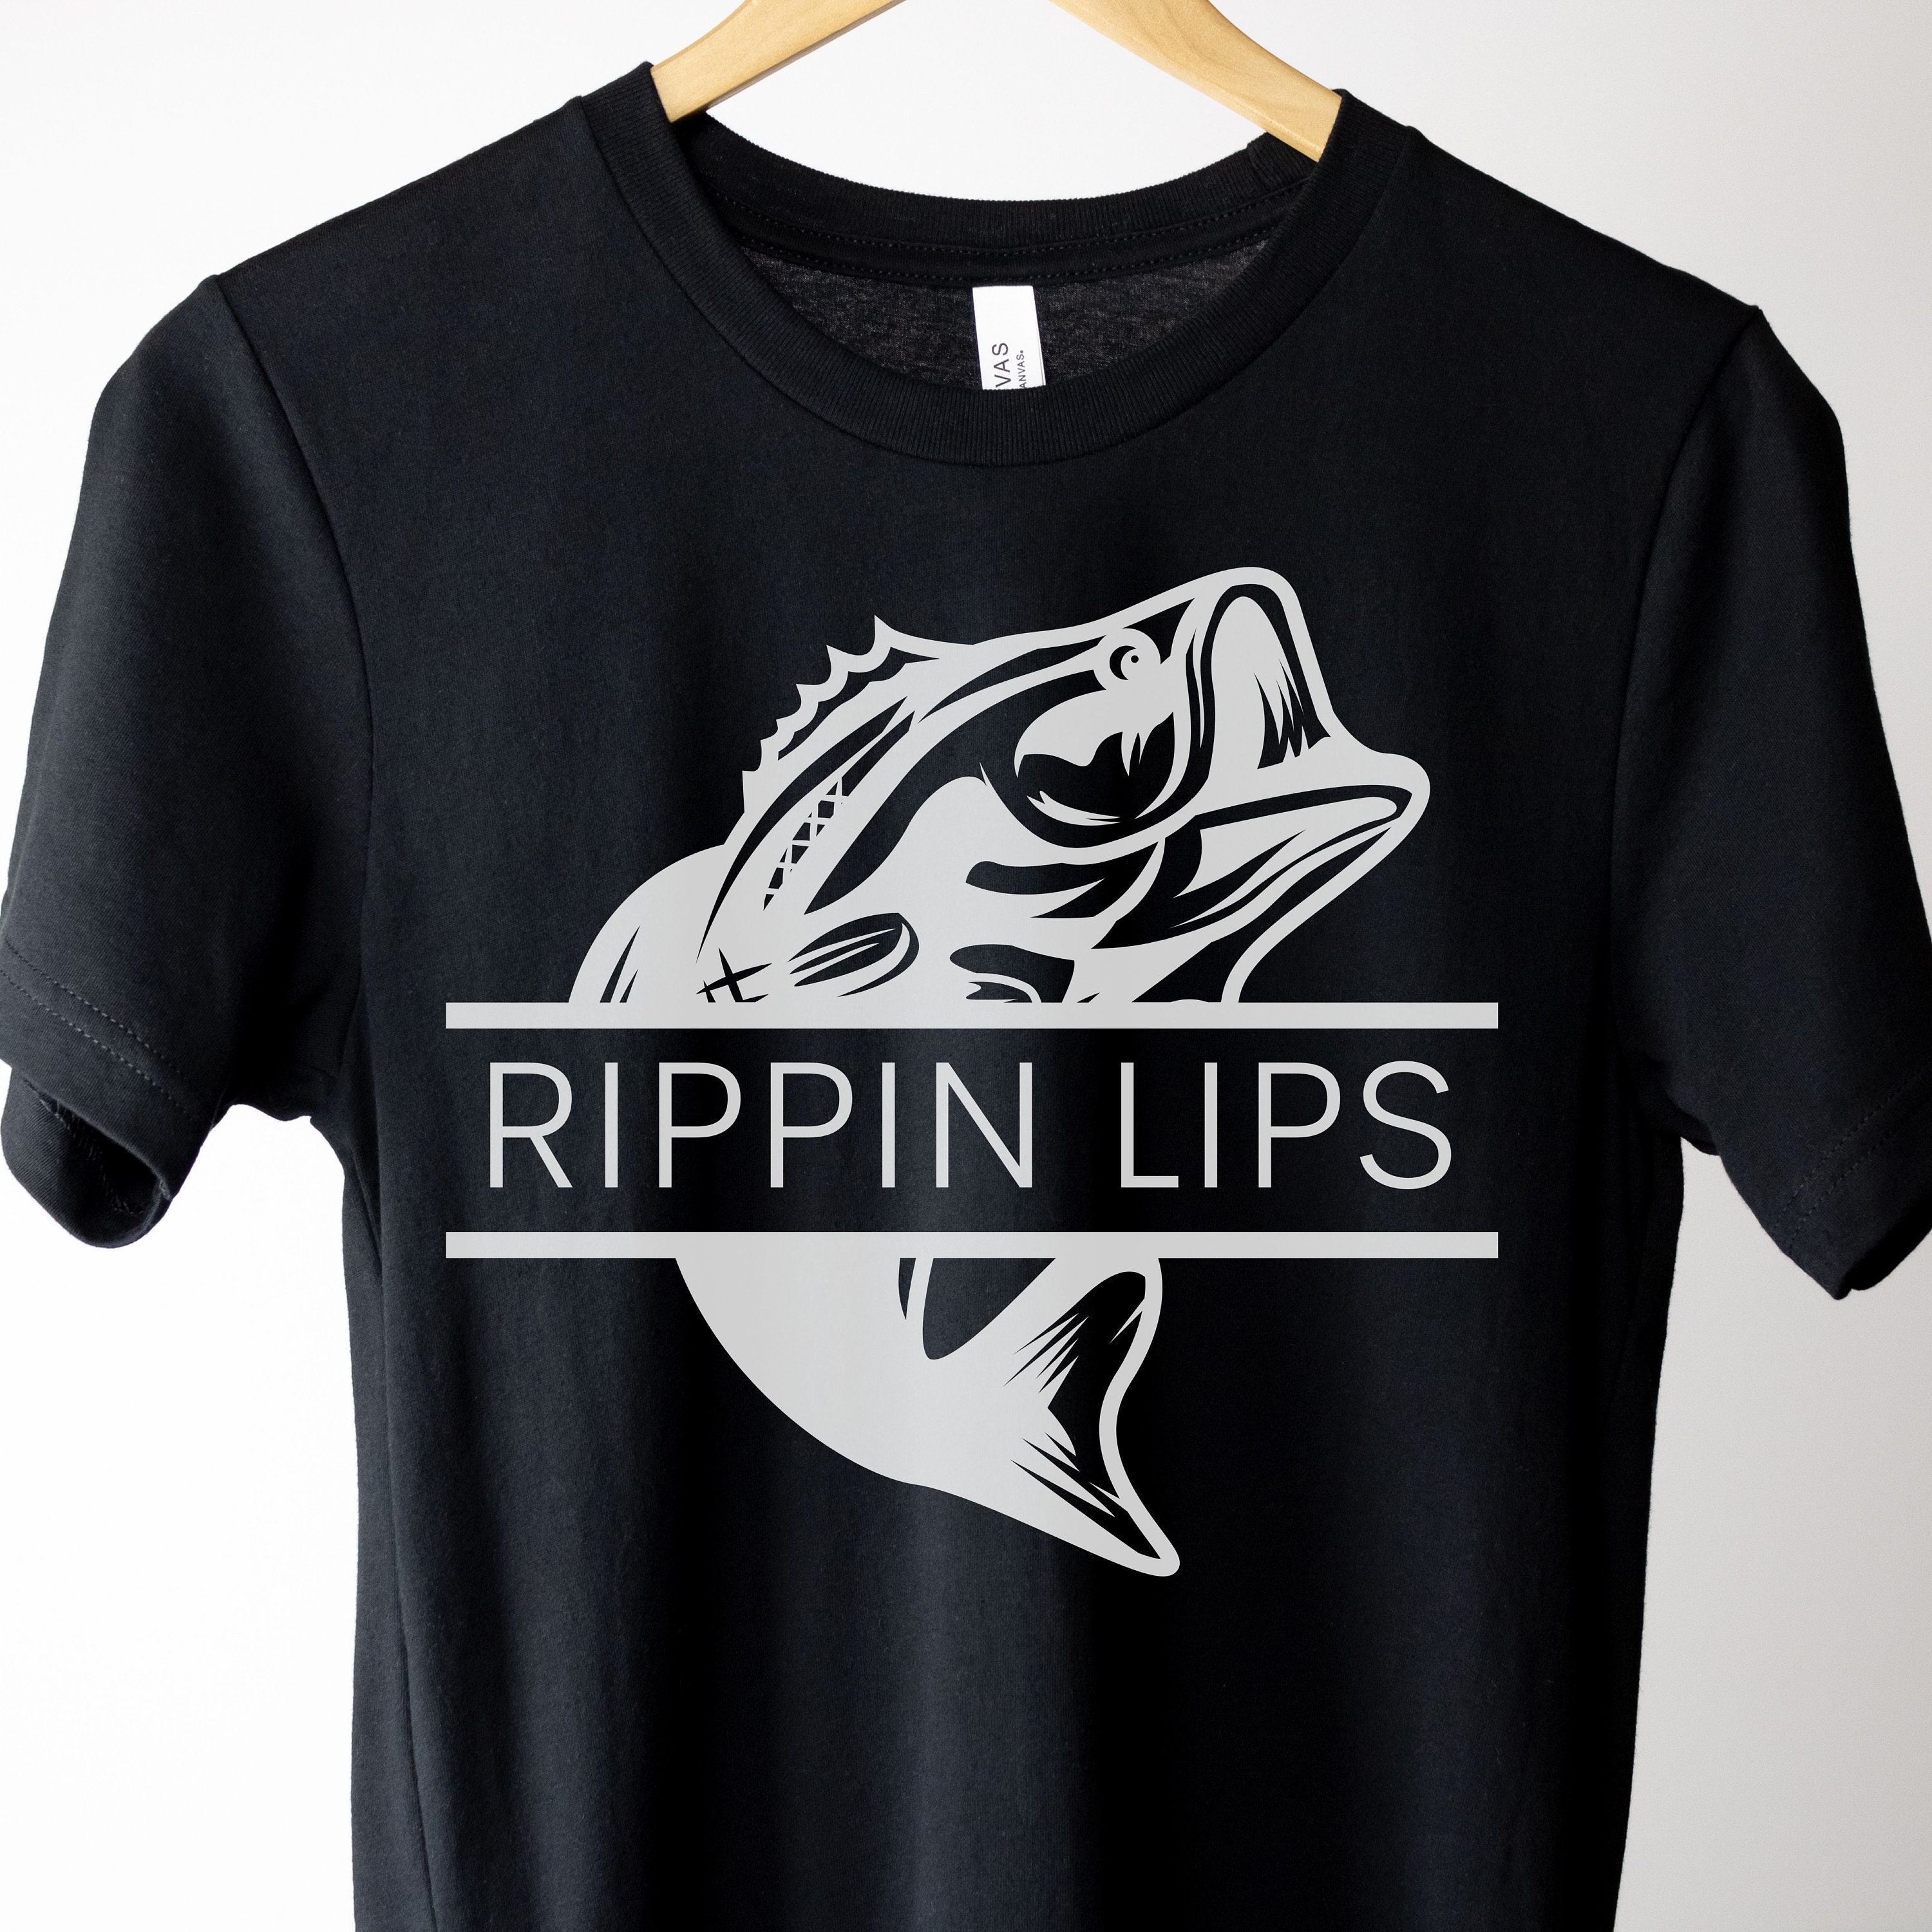 Rippin Lips Shirt, Fishing Shirt, Fishing Gift, Fishing Shirt Gift, Shirt  for the Lake, Gift for Him, Fishing Gear, Gone Fishing Shirt, Tee 